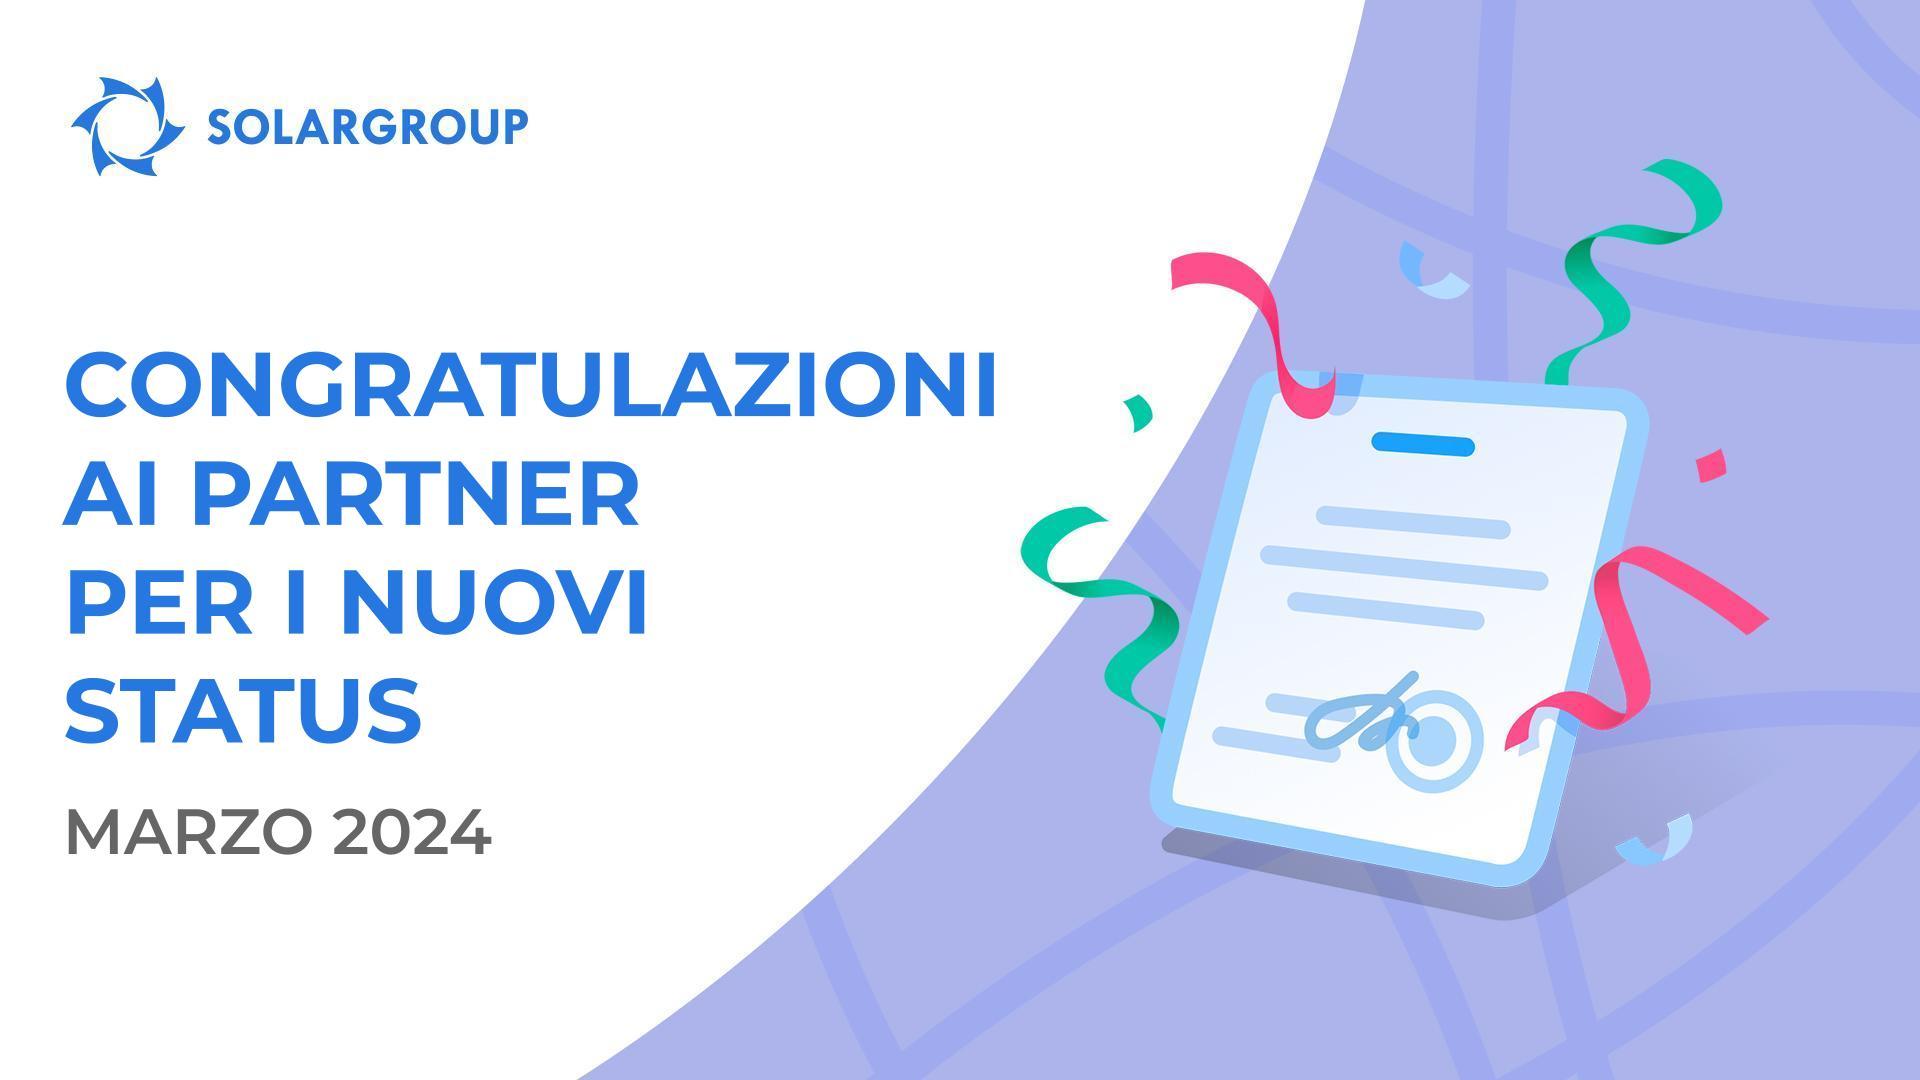 Congratulazioni ai partner per i nuovi status!👏